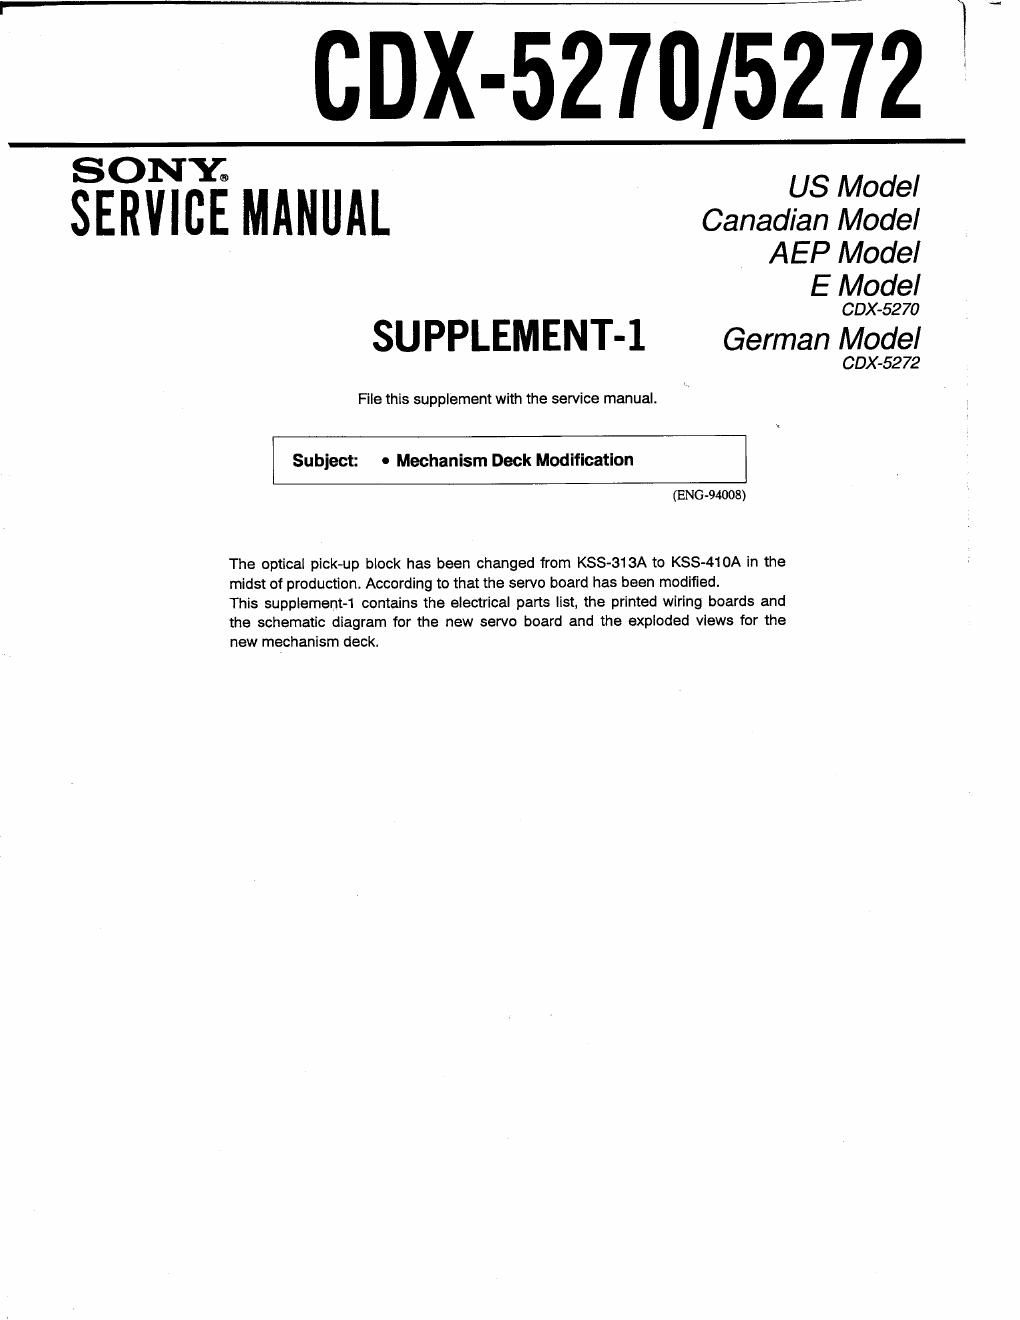 sony cdx 5270 service manual